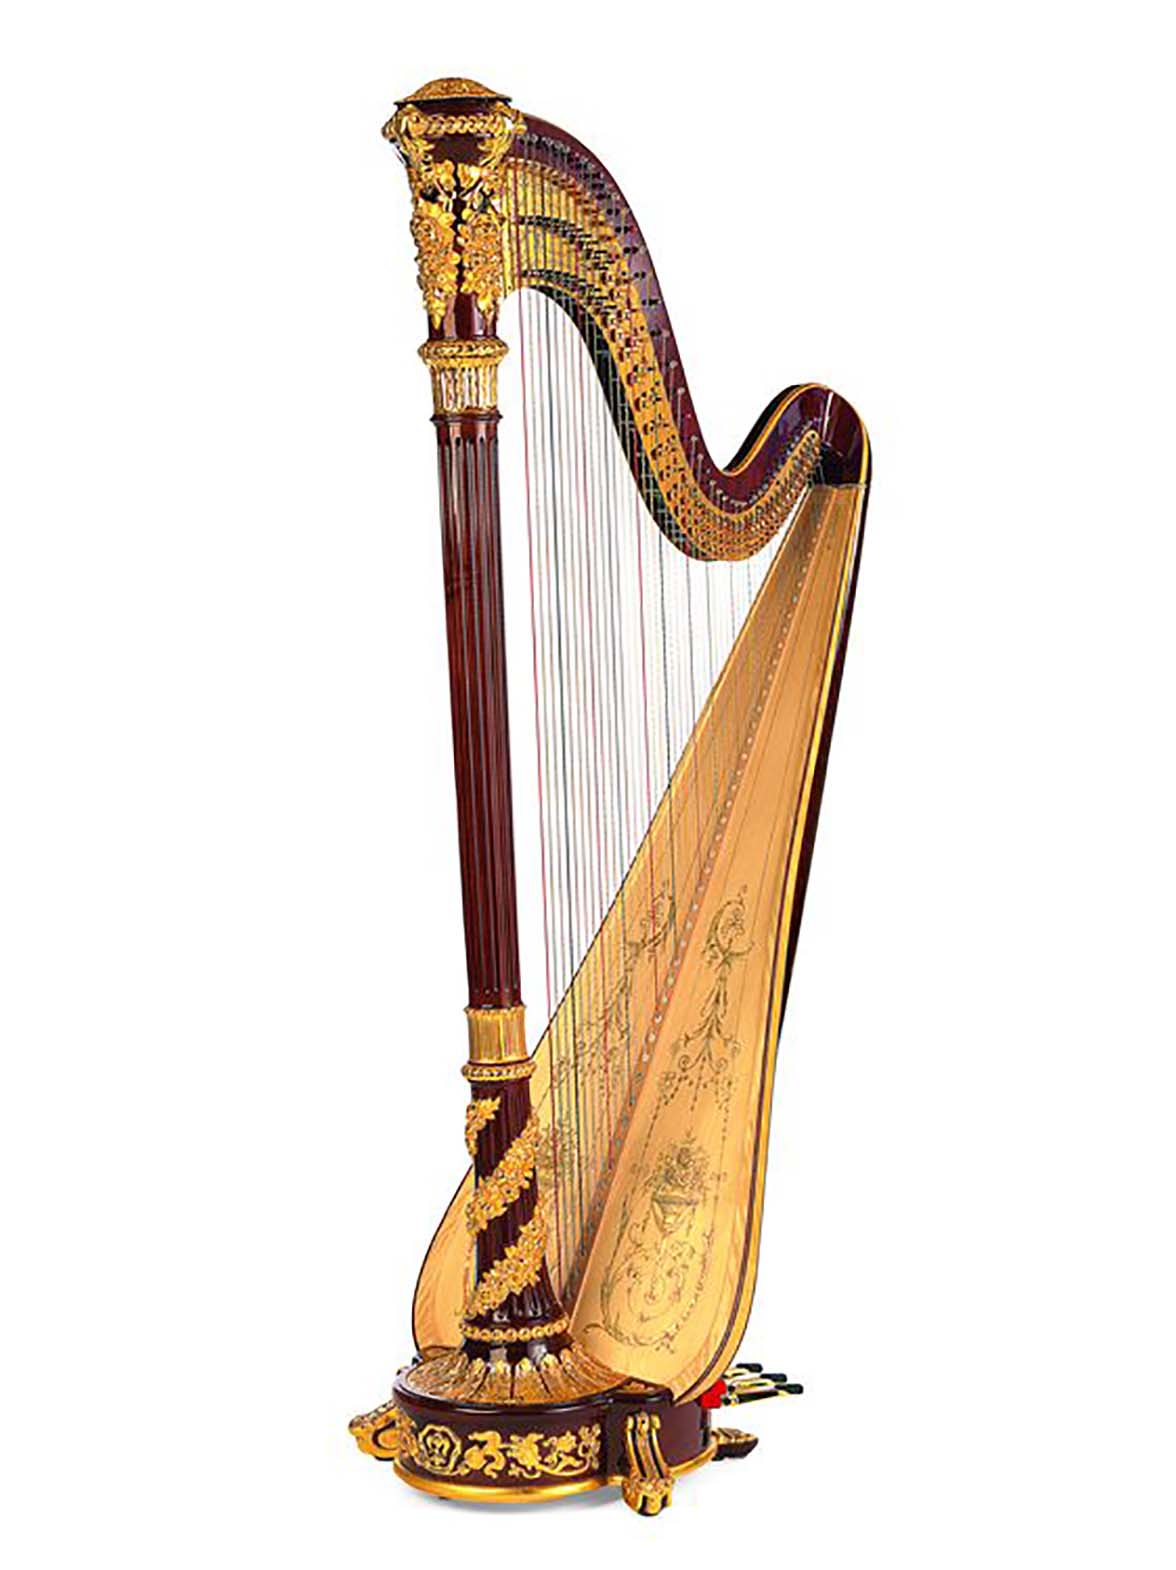 Fun Harp Facts